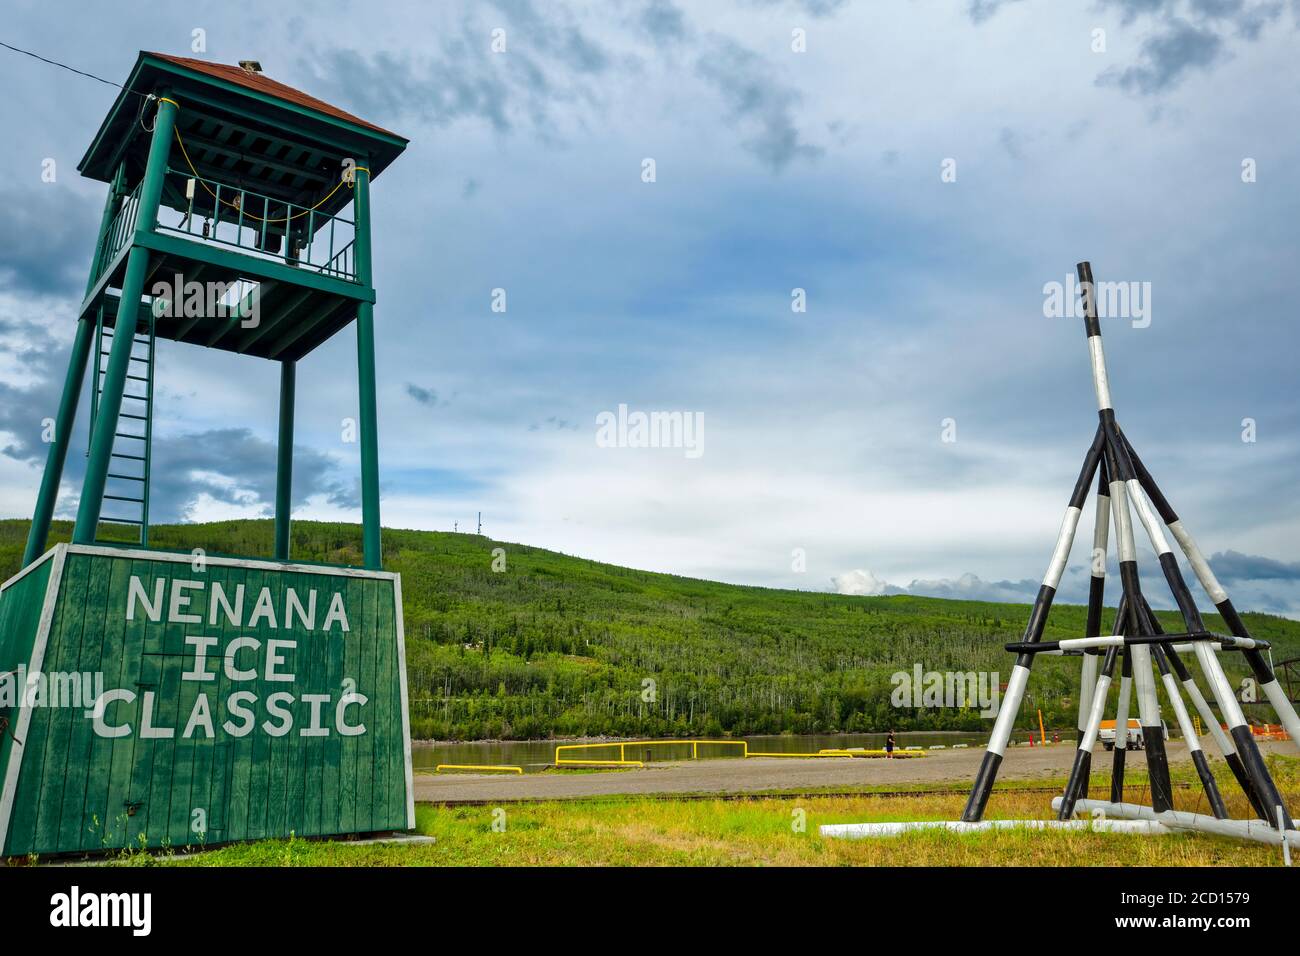 Exhibición de Nenana Ice Classic trípode para 2016 y torre por Tanana River, Alaska Interior en verano; Nenana, Alaska, Estados Unidos de América Foto de stock